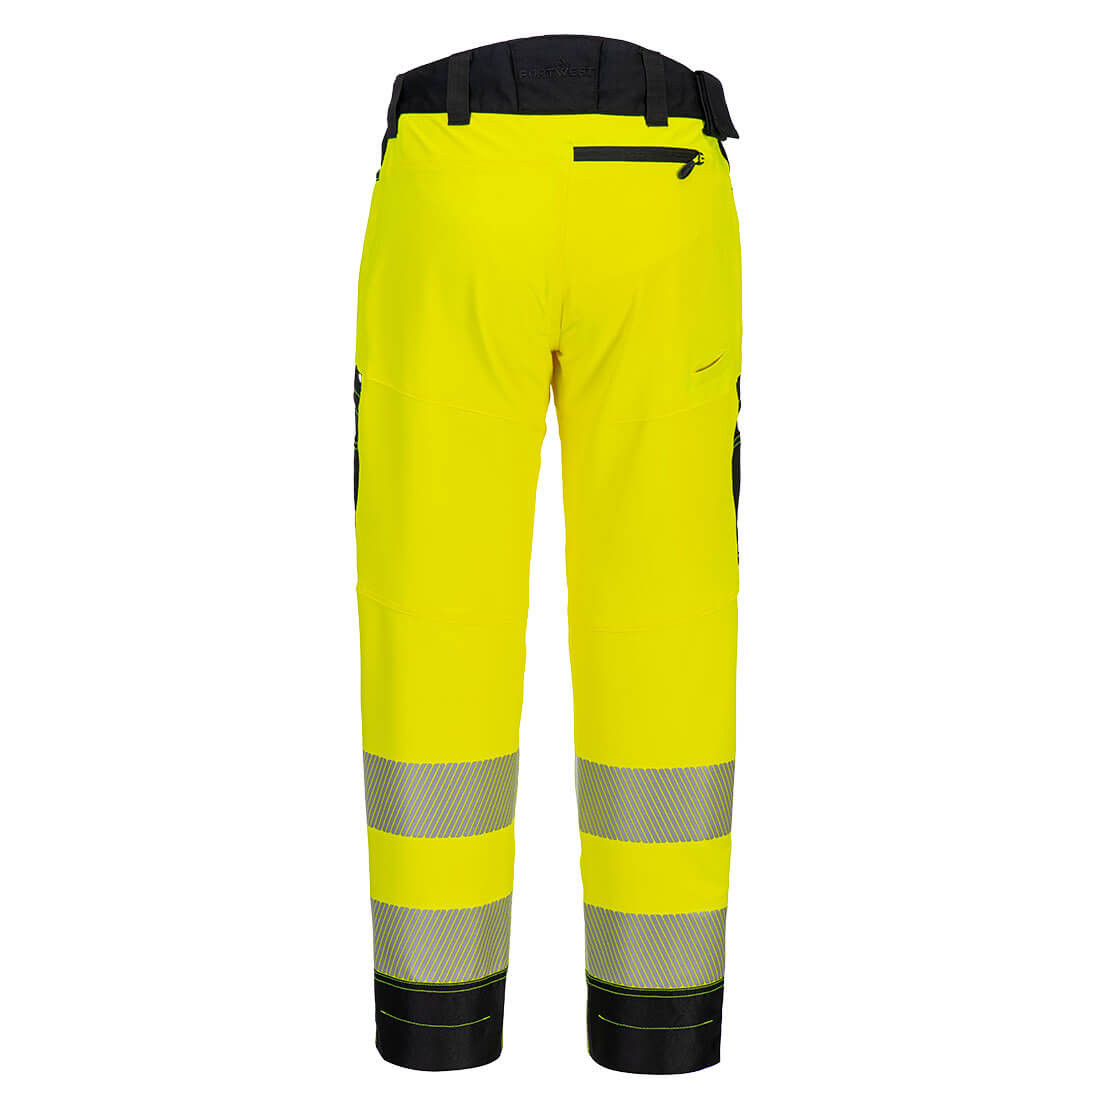 Pantalones de alta visibilidad DX4 Hi-Vis Service - Ropa de protección